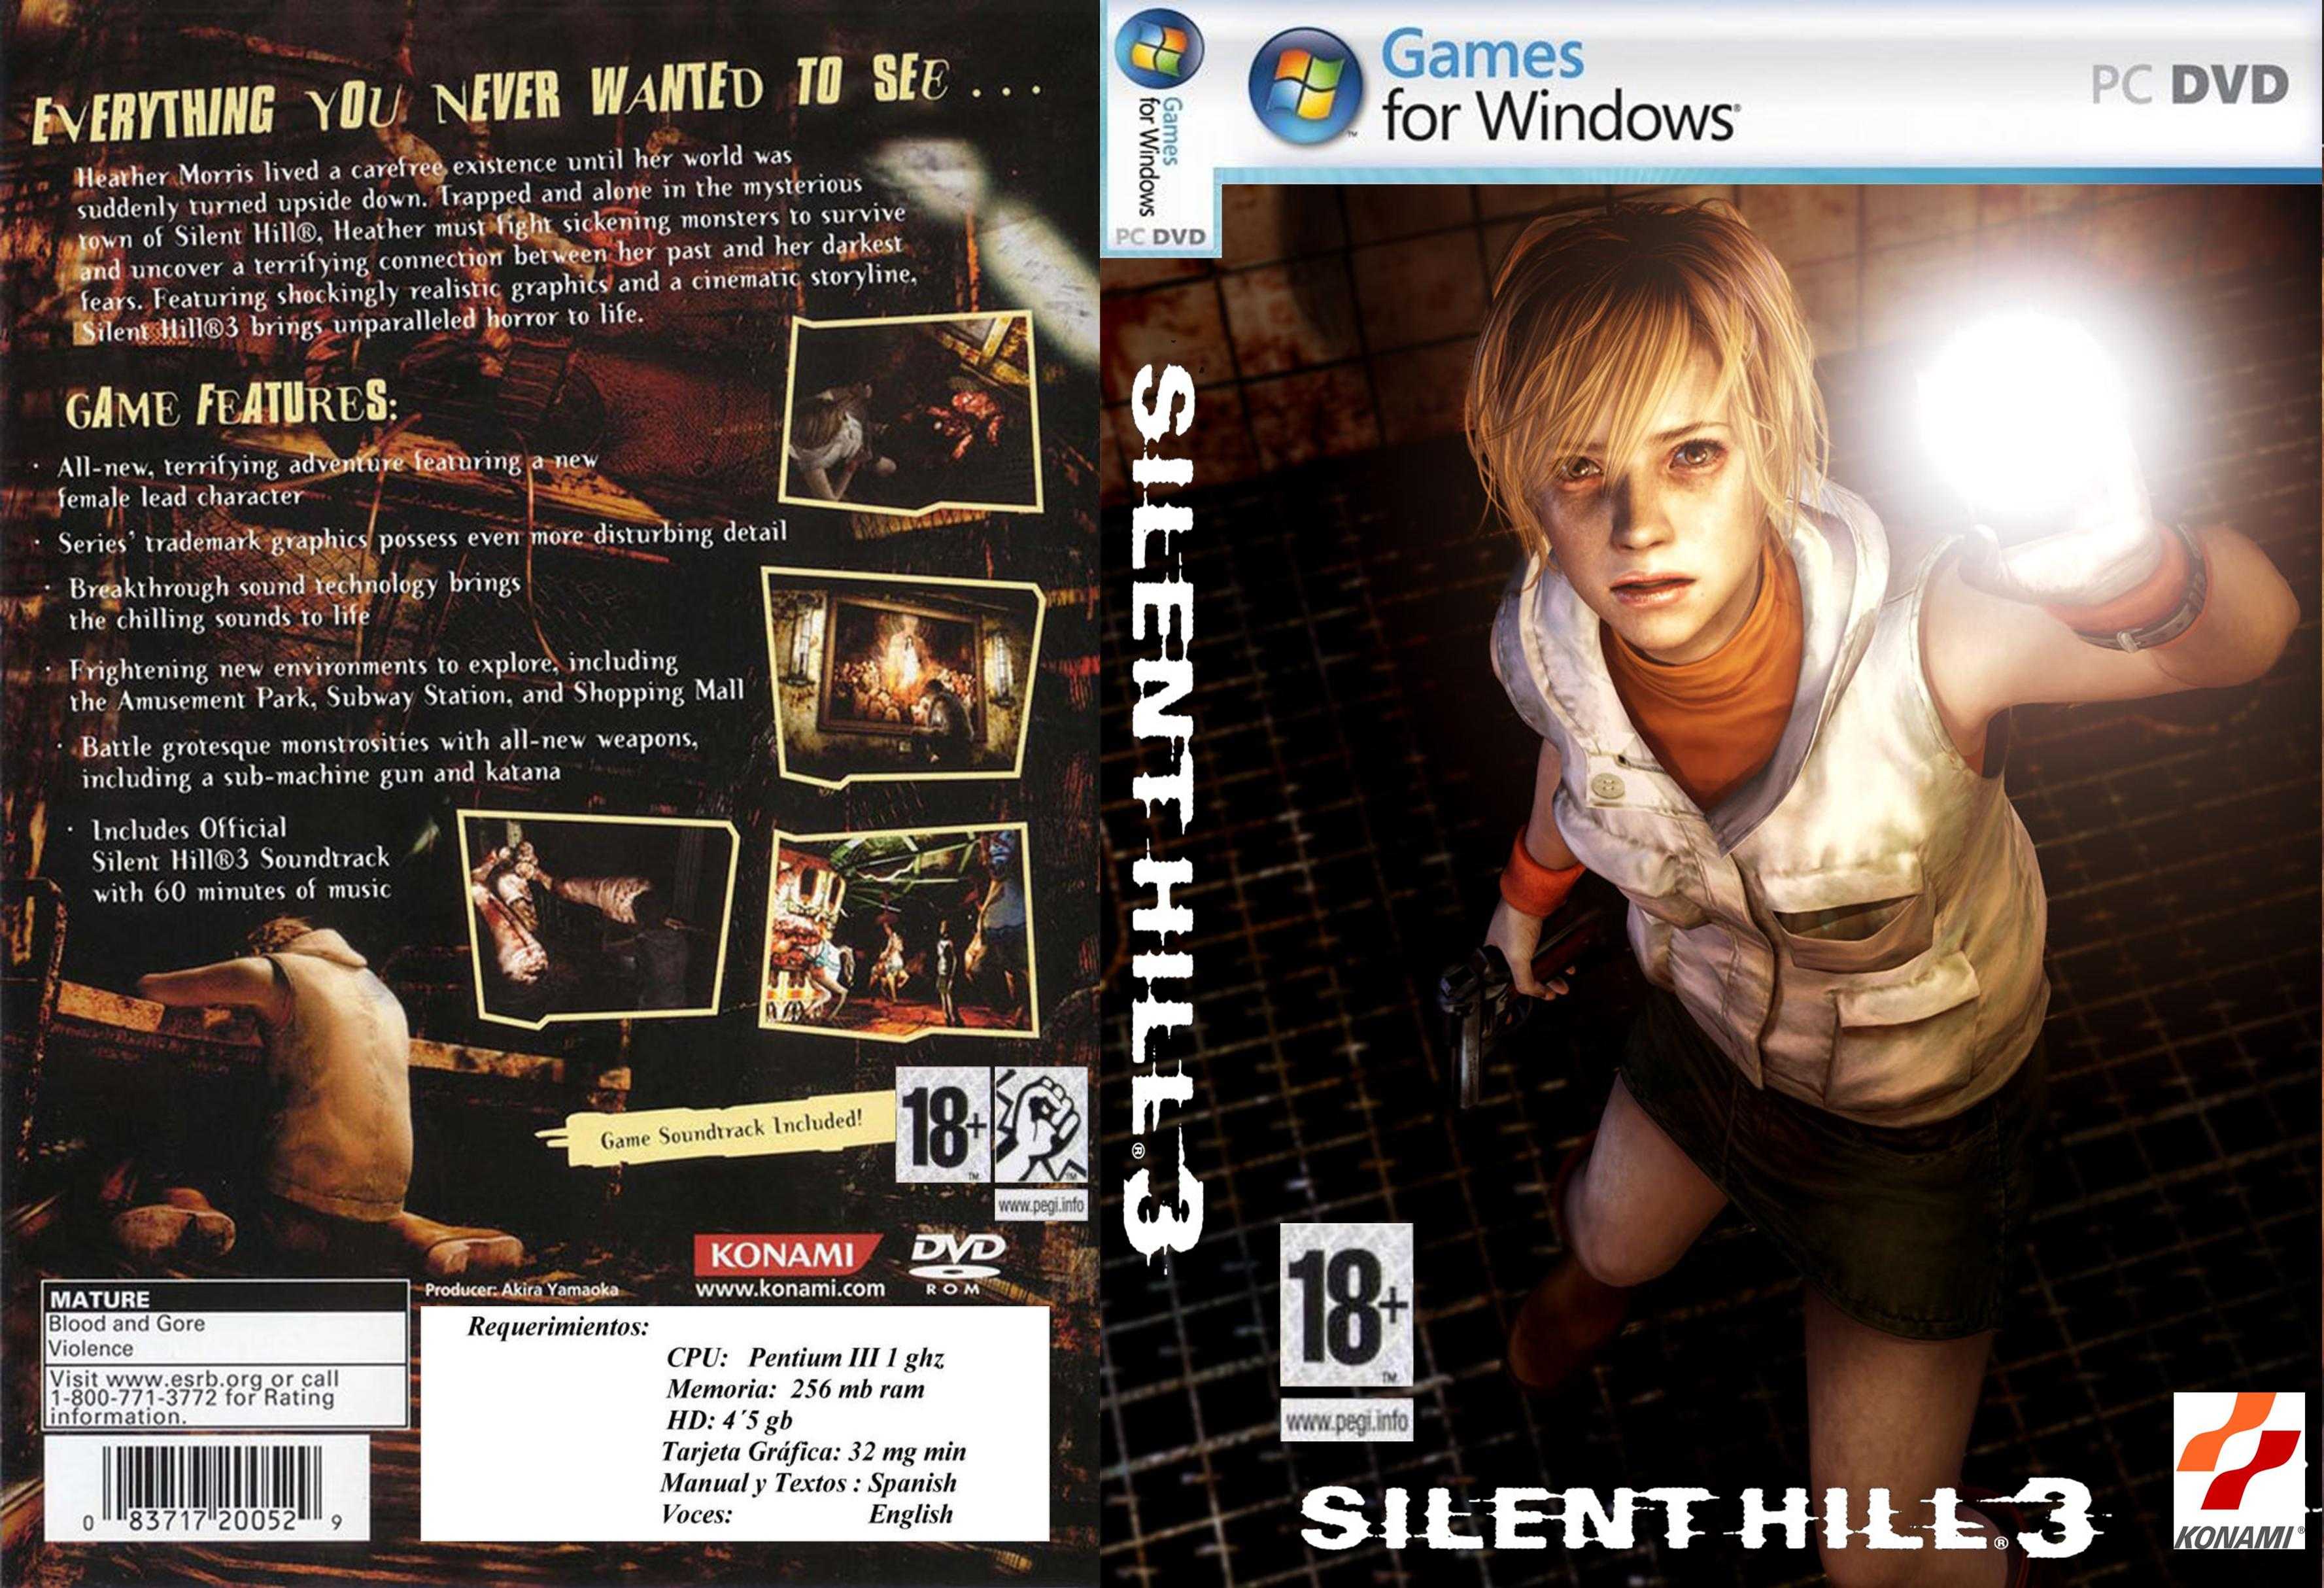 Сайлент хилл перевод. Обложка диска Silent Hill 3 ps2.